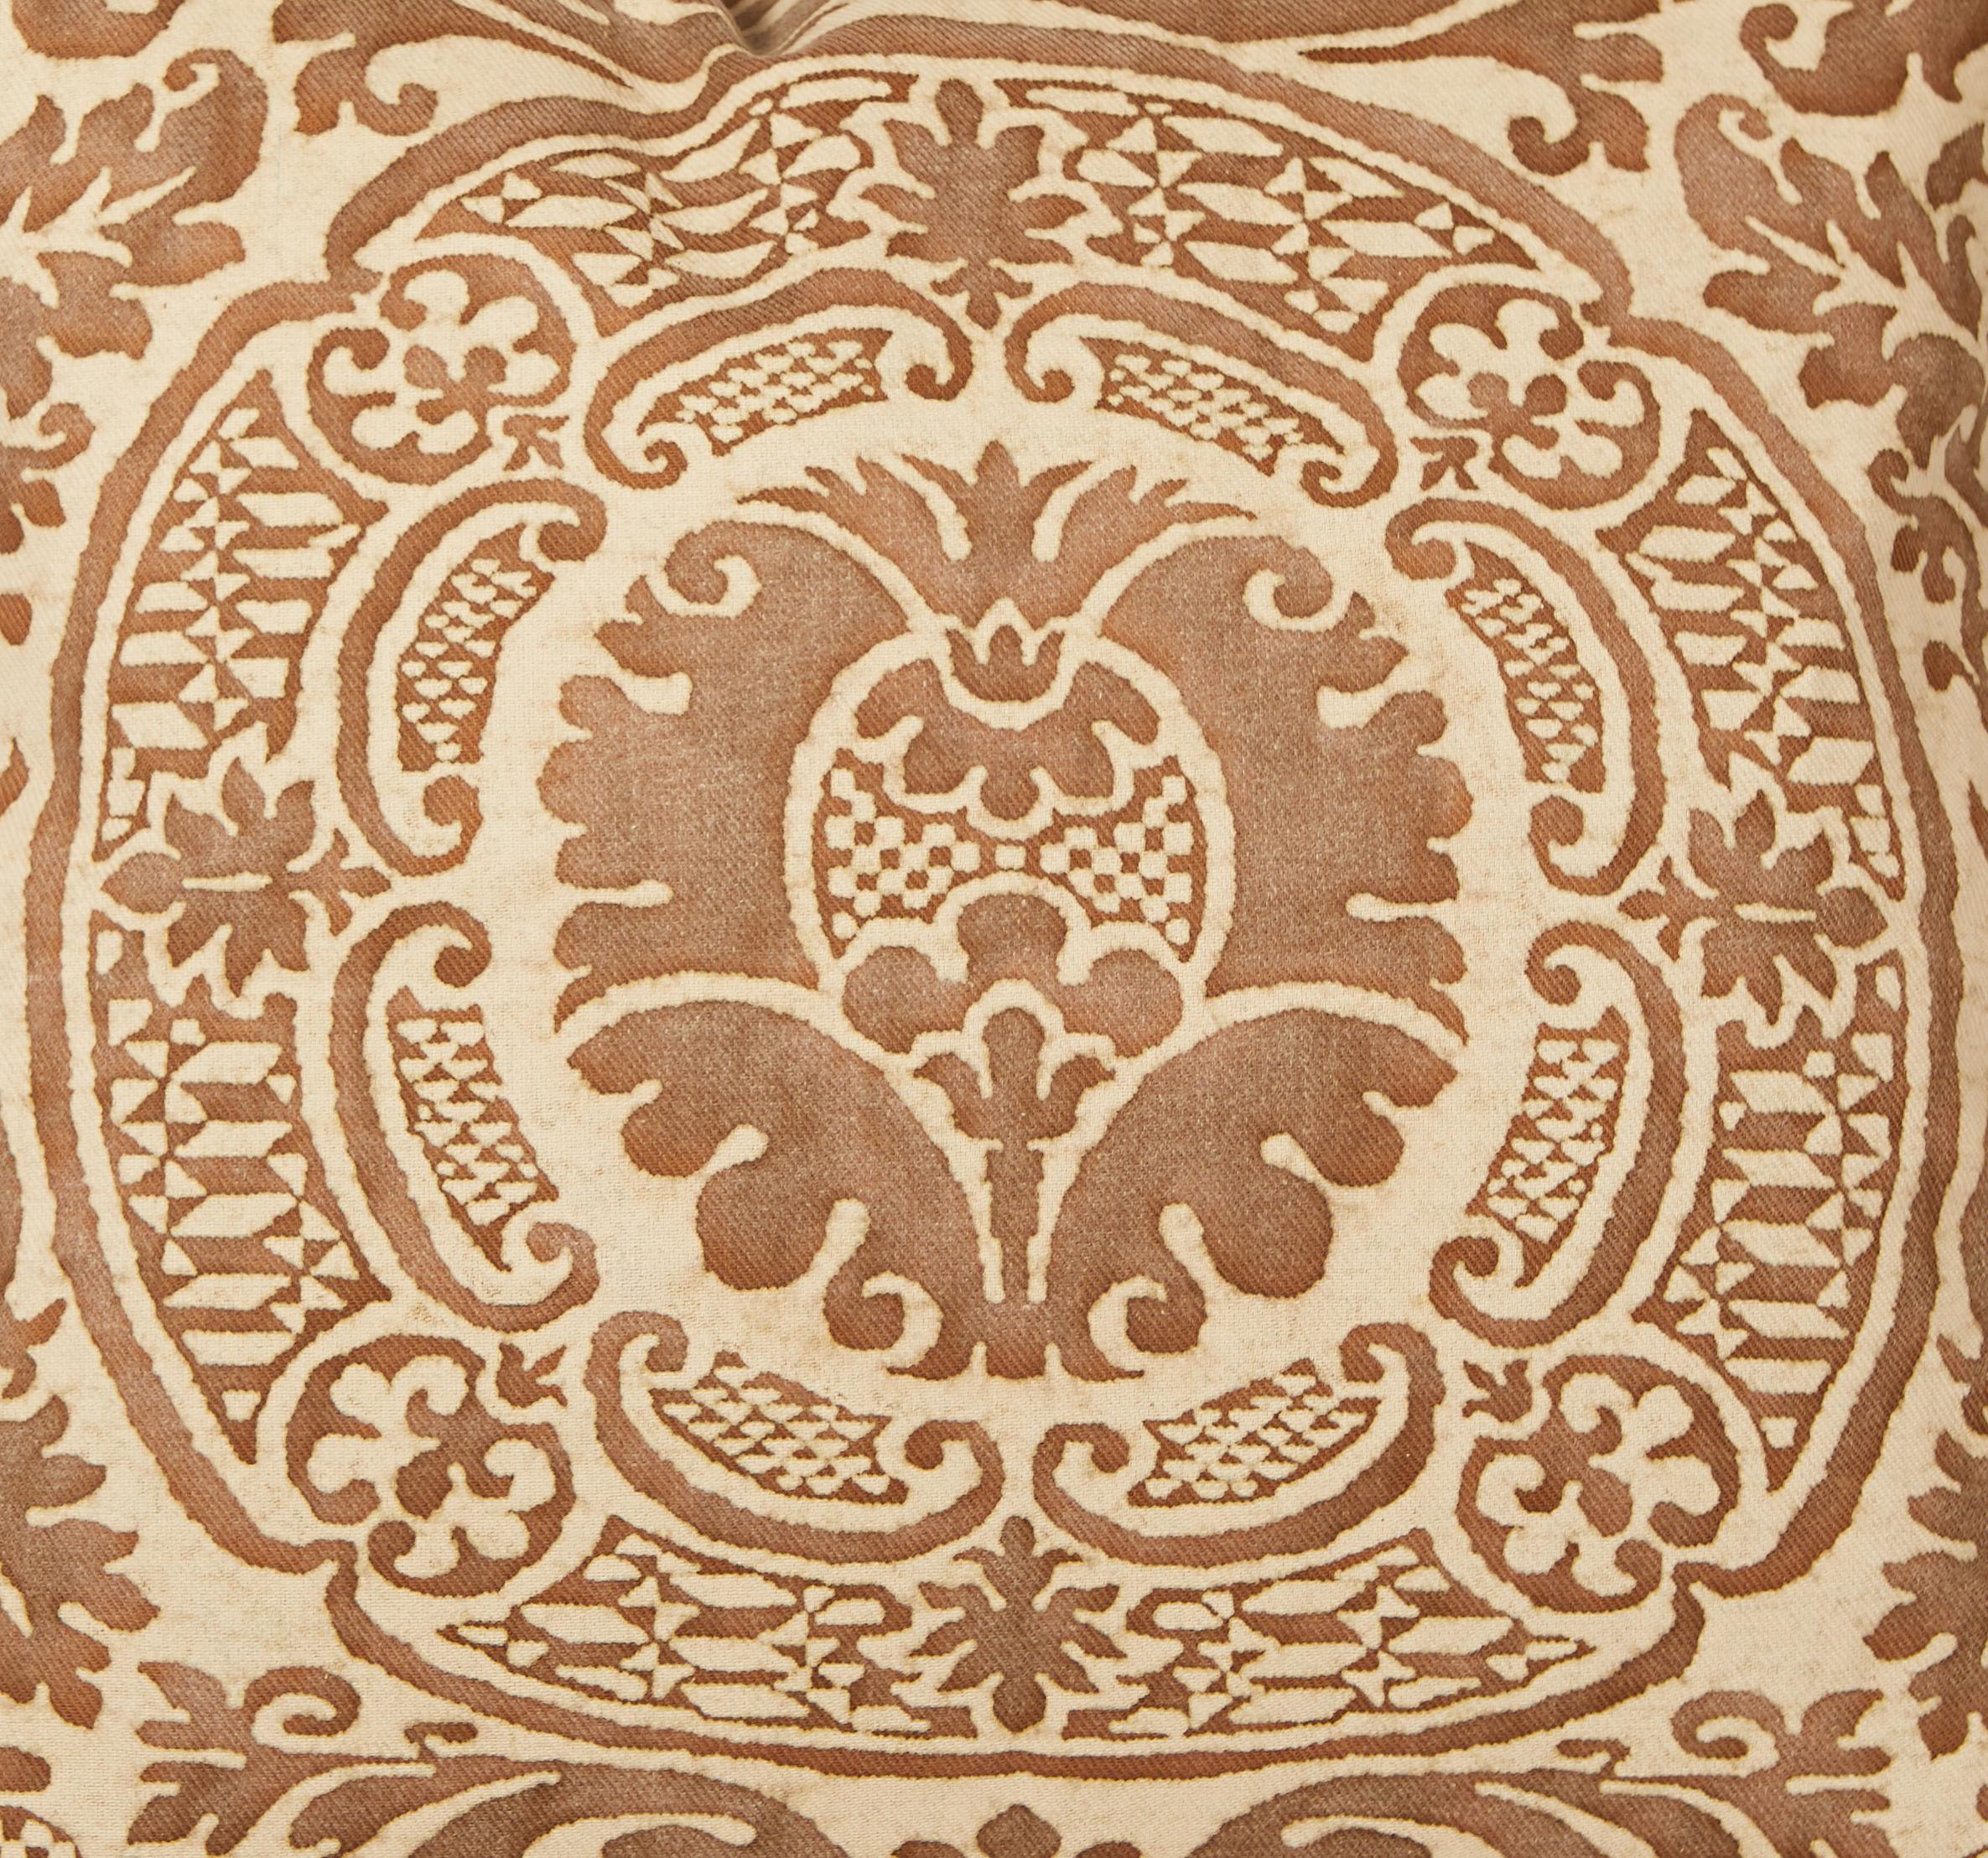 Ein Paar Fortuny-Stoffkissen mit dem Orsini-Muster. Das Orsini-Muster in den Farben Braun und Beige ist ein italienisches Design aus dem 17. Jahrhundert, benannt nach einer der fürstlichsten Familien des mittelalterlichen Italiens und des Roms der